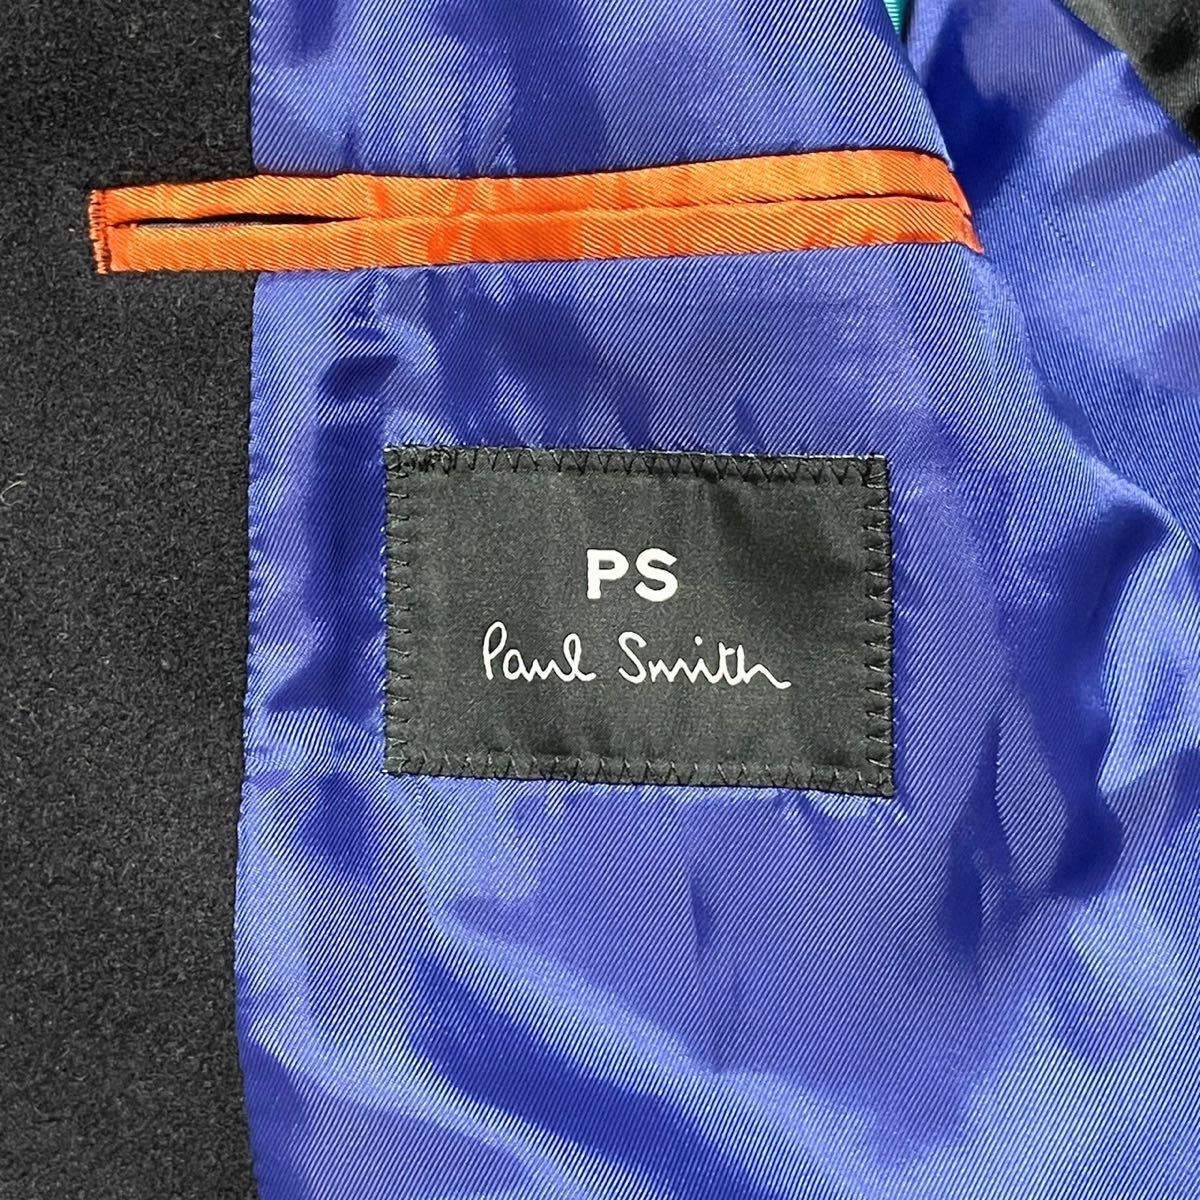 ポールスミス 裏地総柄 極暖ウール PS Paul Smith ピーコート ブラック 黒 ブルー アウター メンズ M ビジネス スーツ ドレス ピーエス_画像7